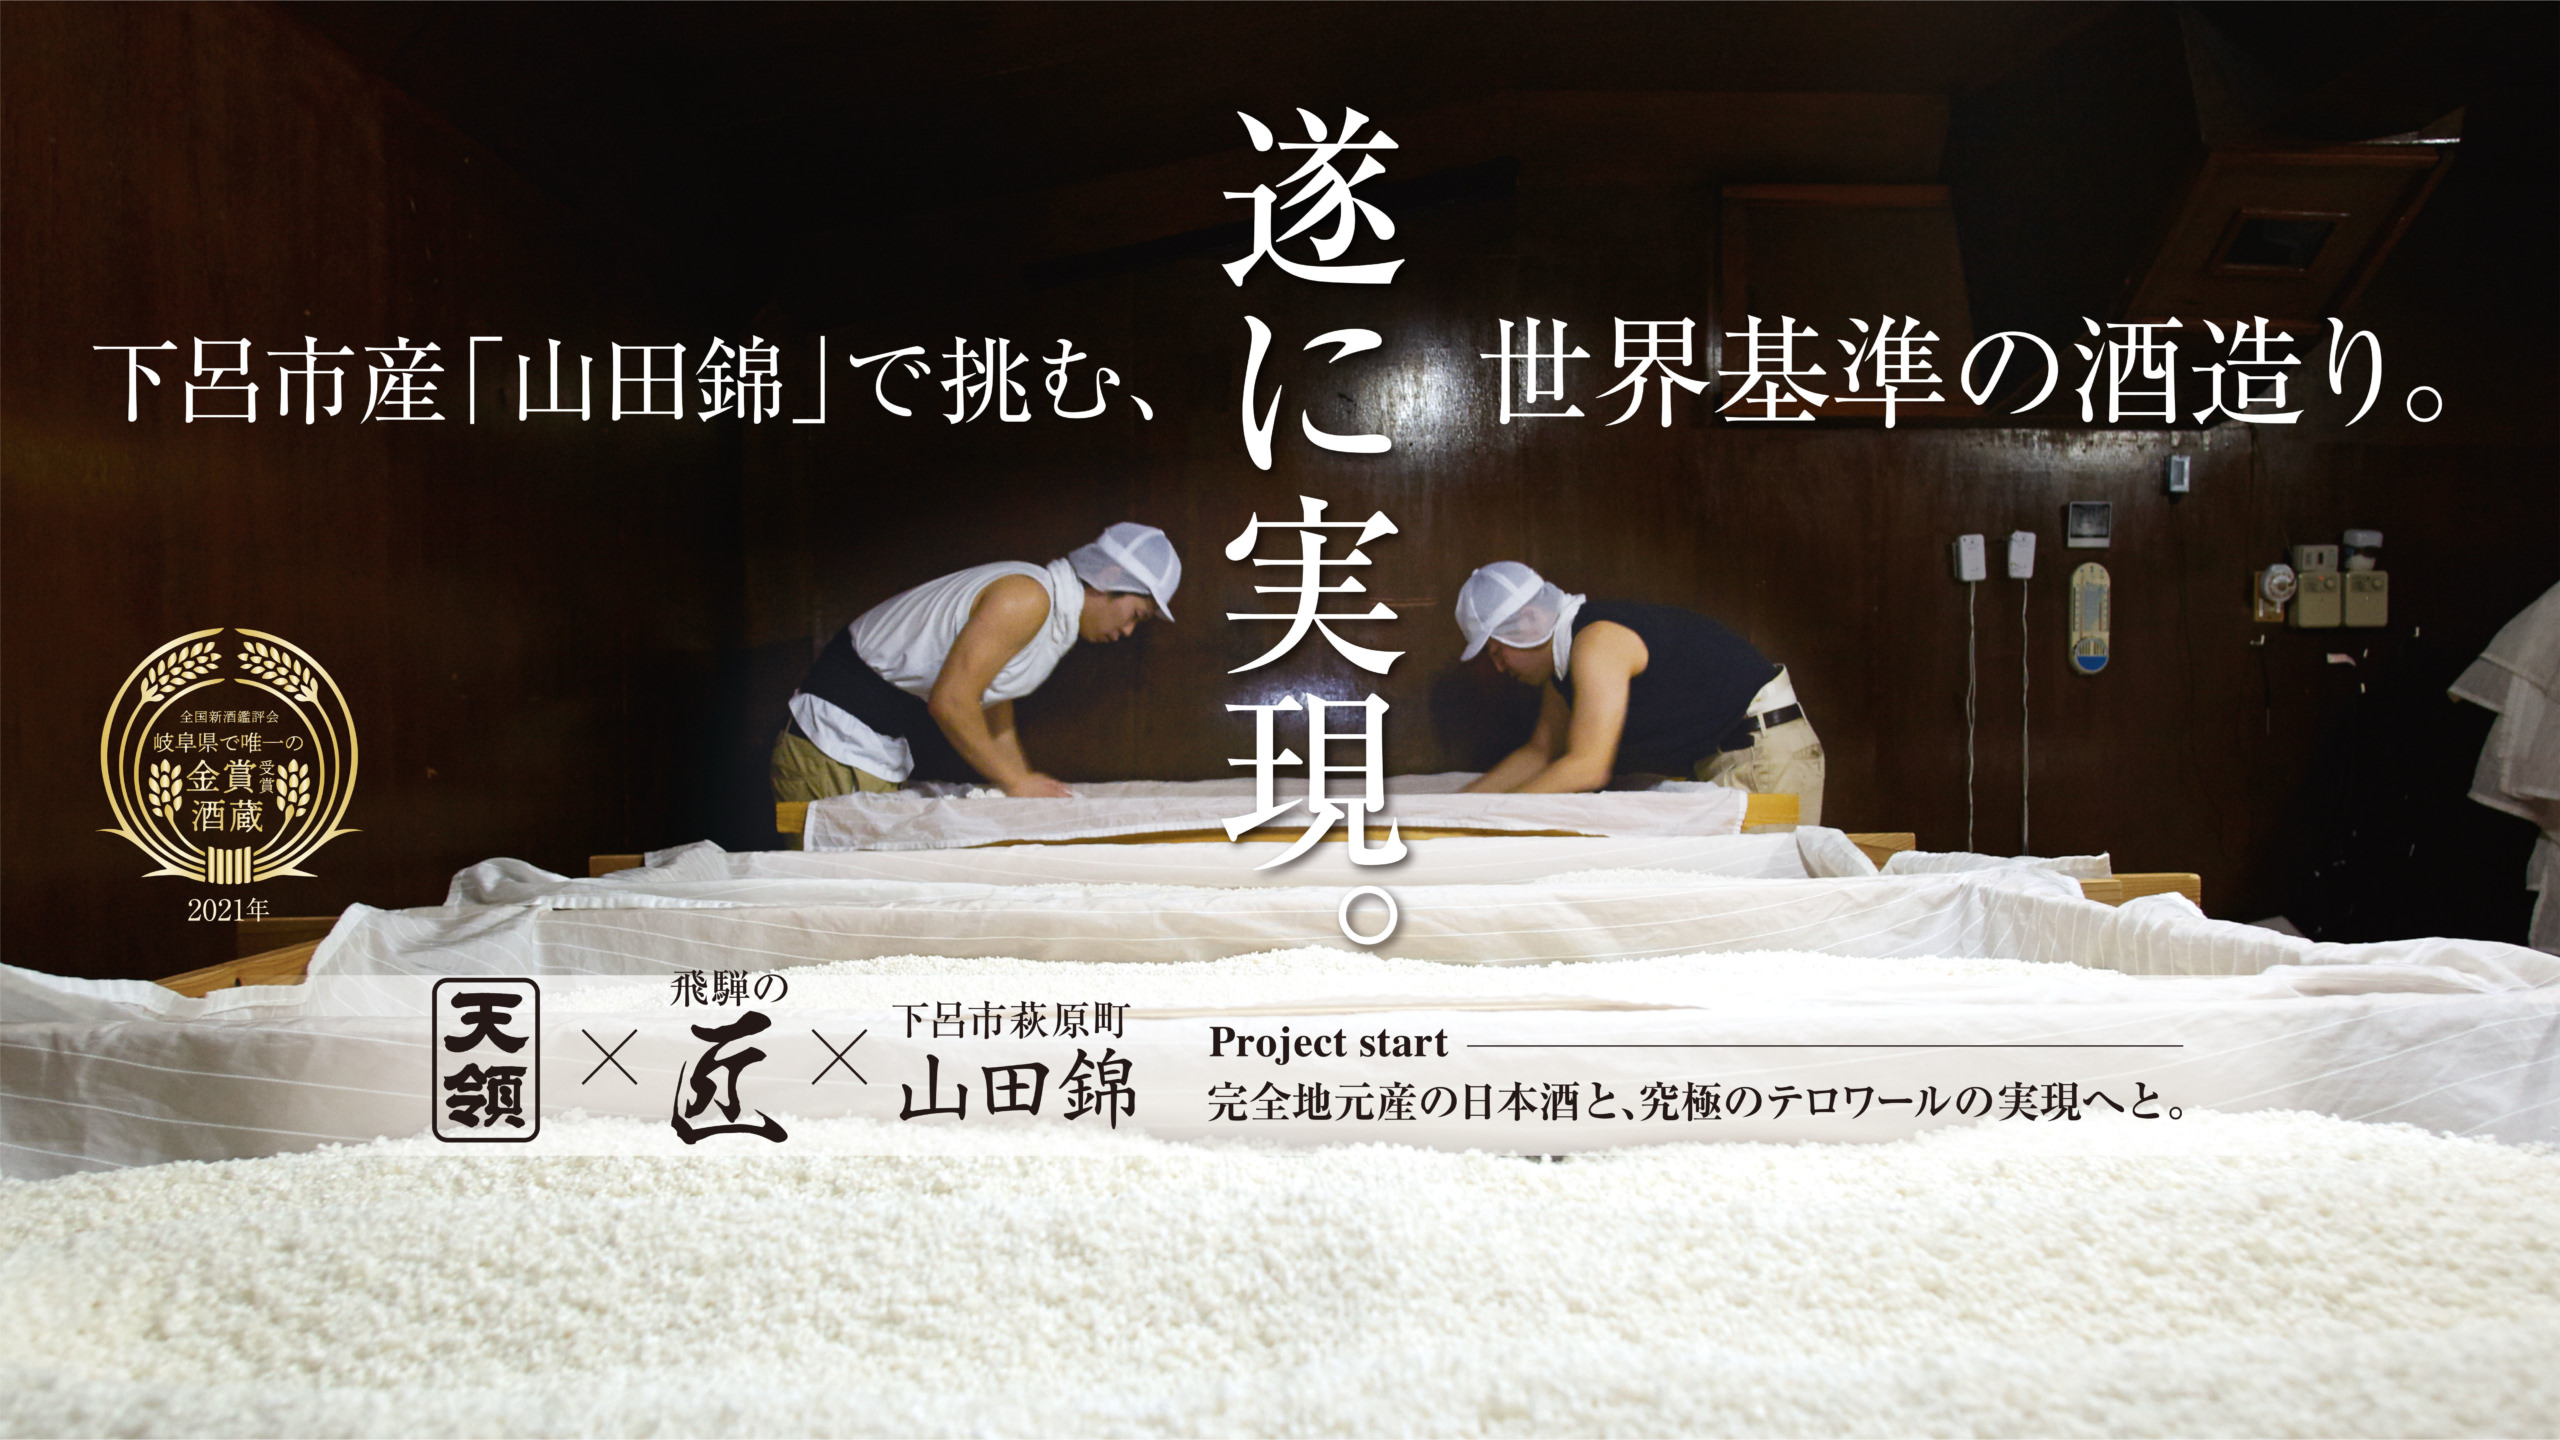 『ゲロのどぶ』をリリースした天領酒蔵が
下呂市産「山田錦」で世界基準の日本酒造りに初挑戦！
12月29日より“Makuake”にてプロジェクト開始